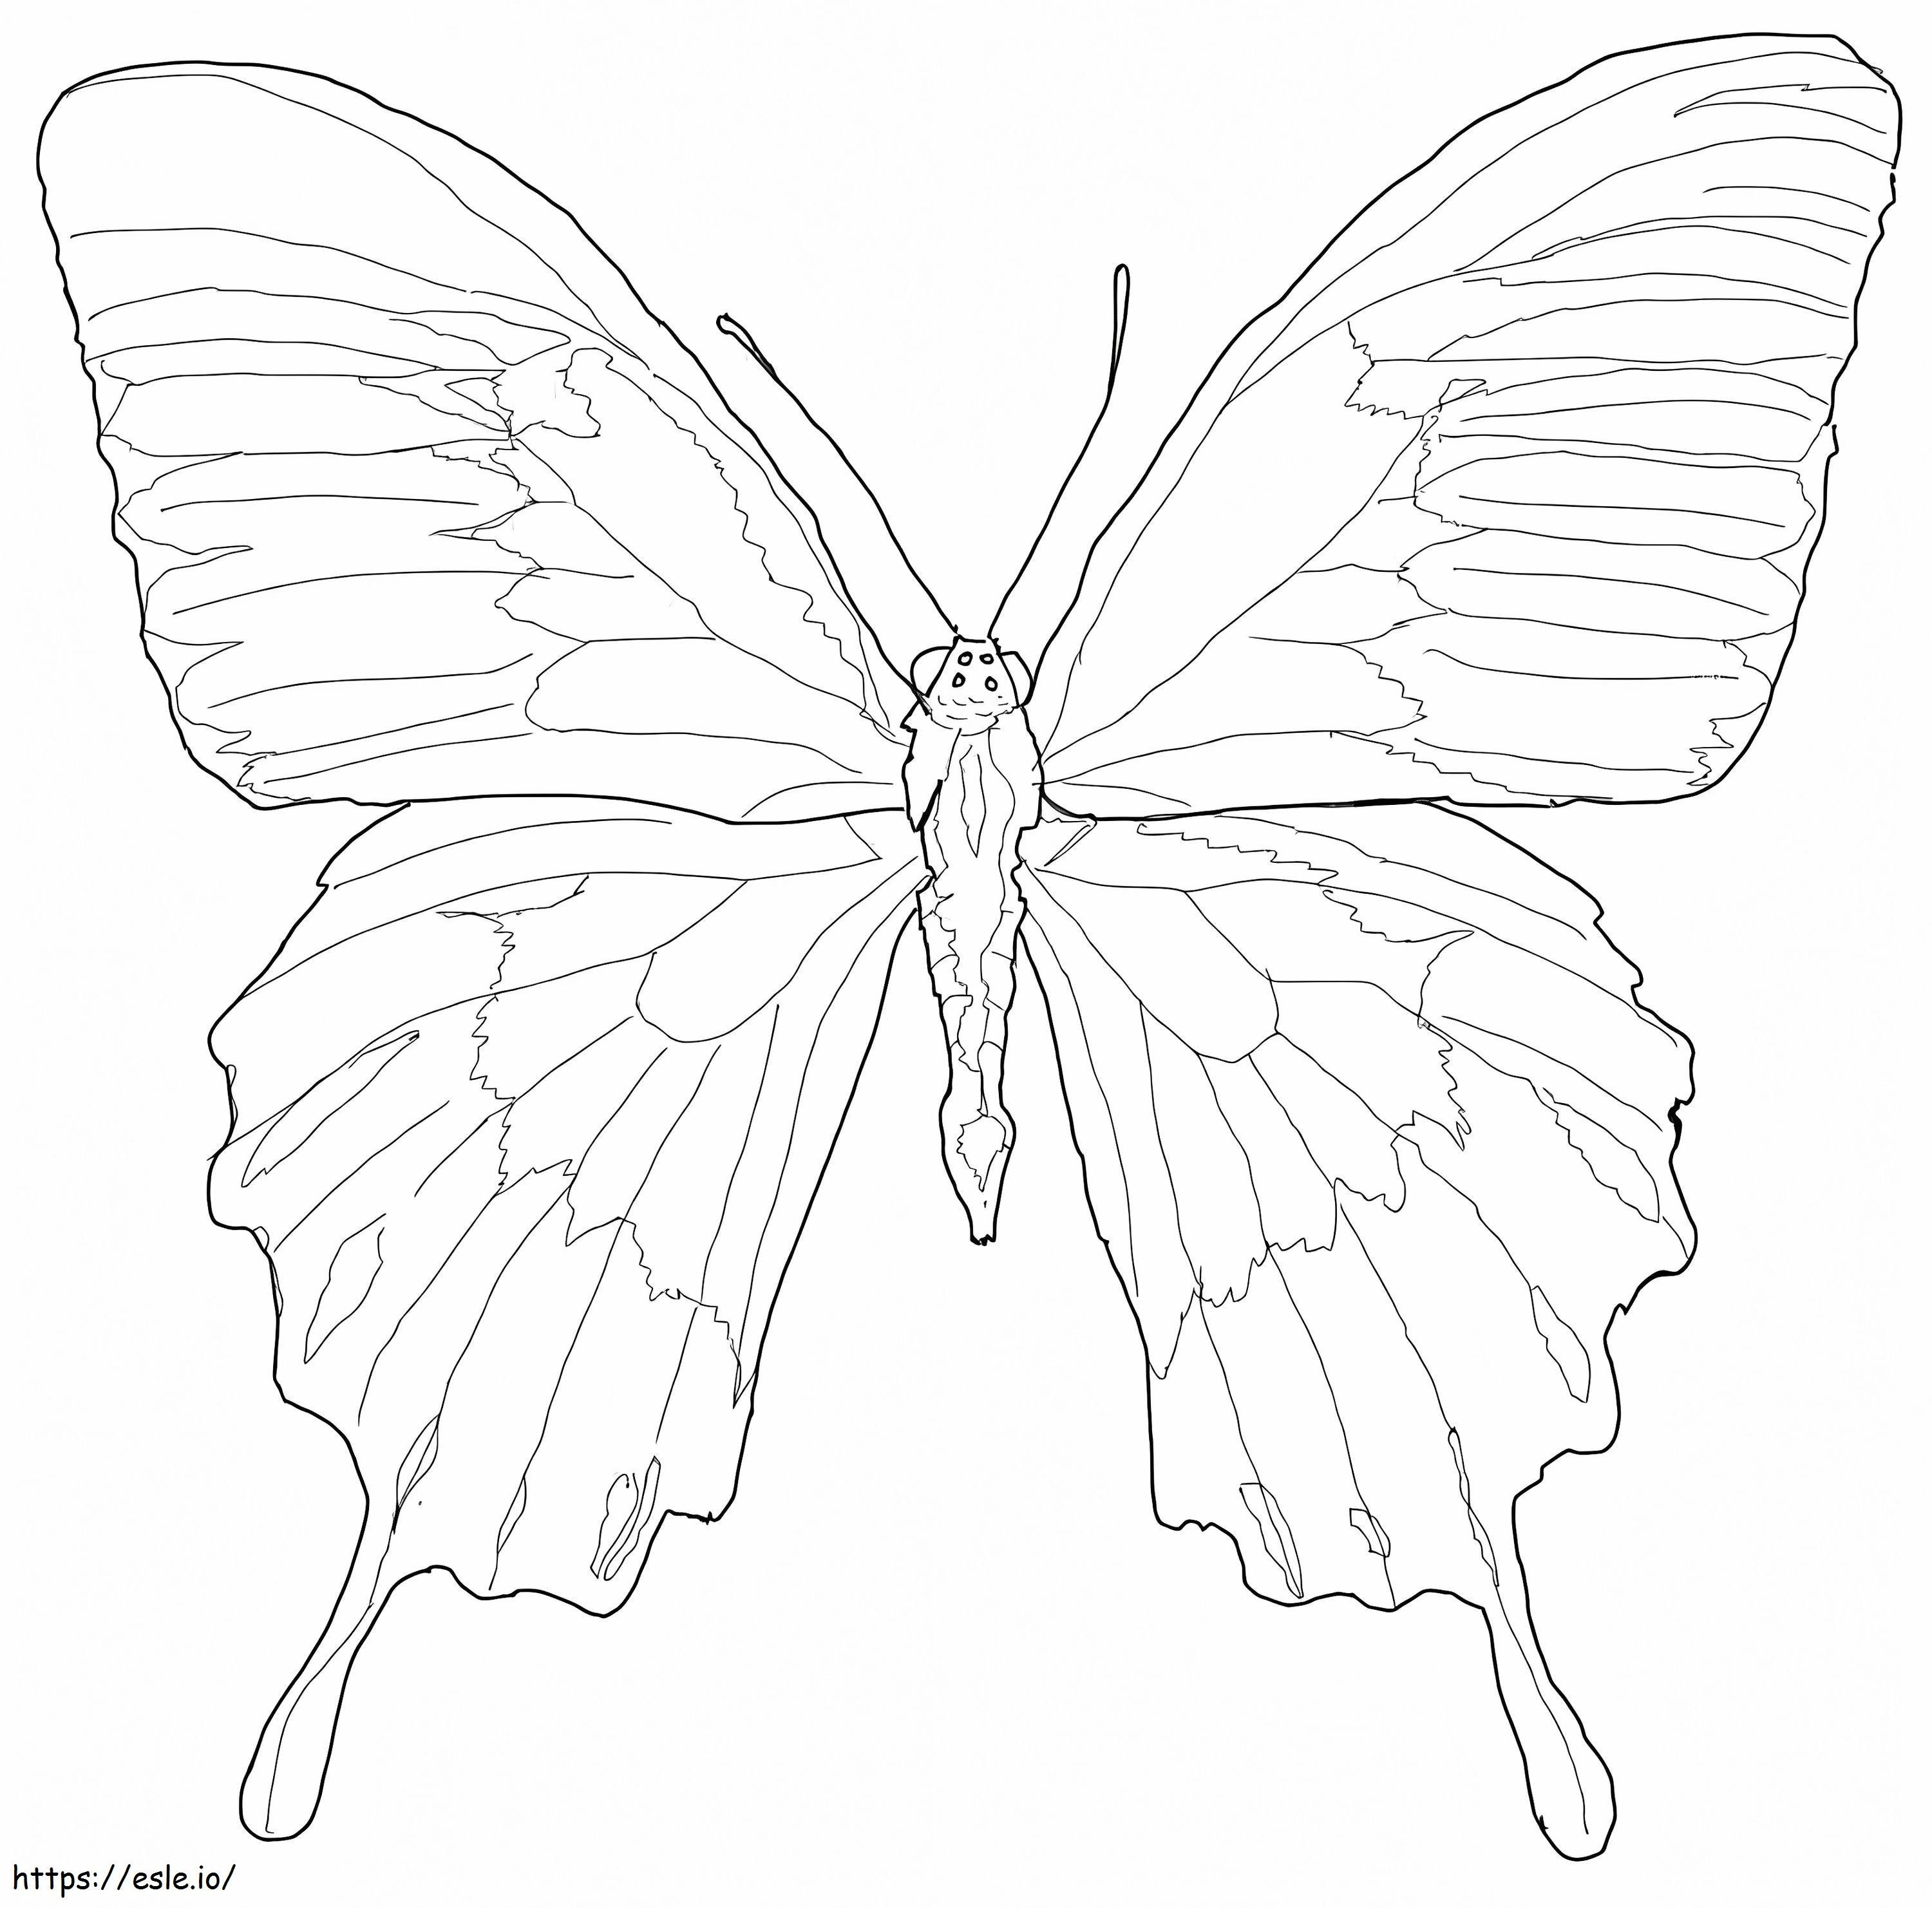 La farfalla di Ulisse 1 da colorare